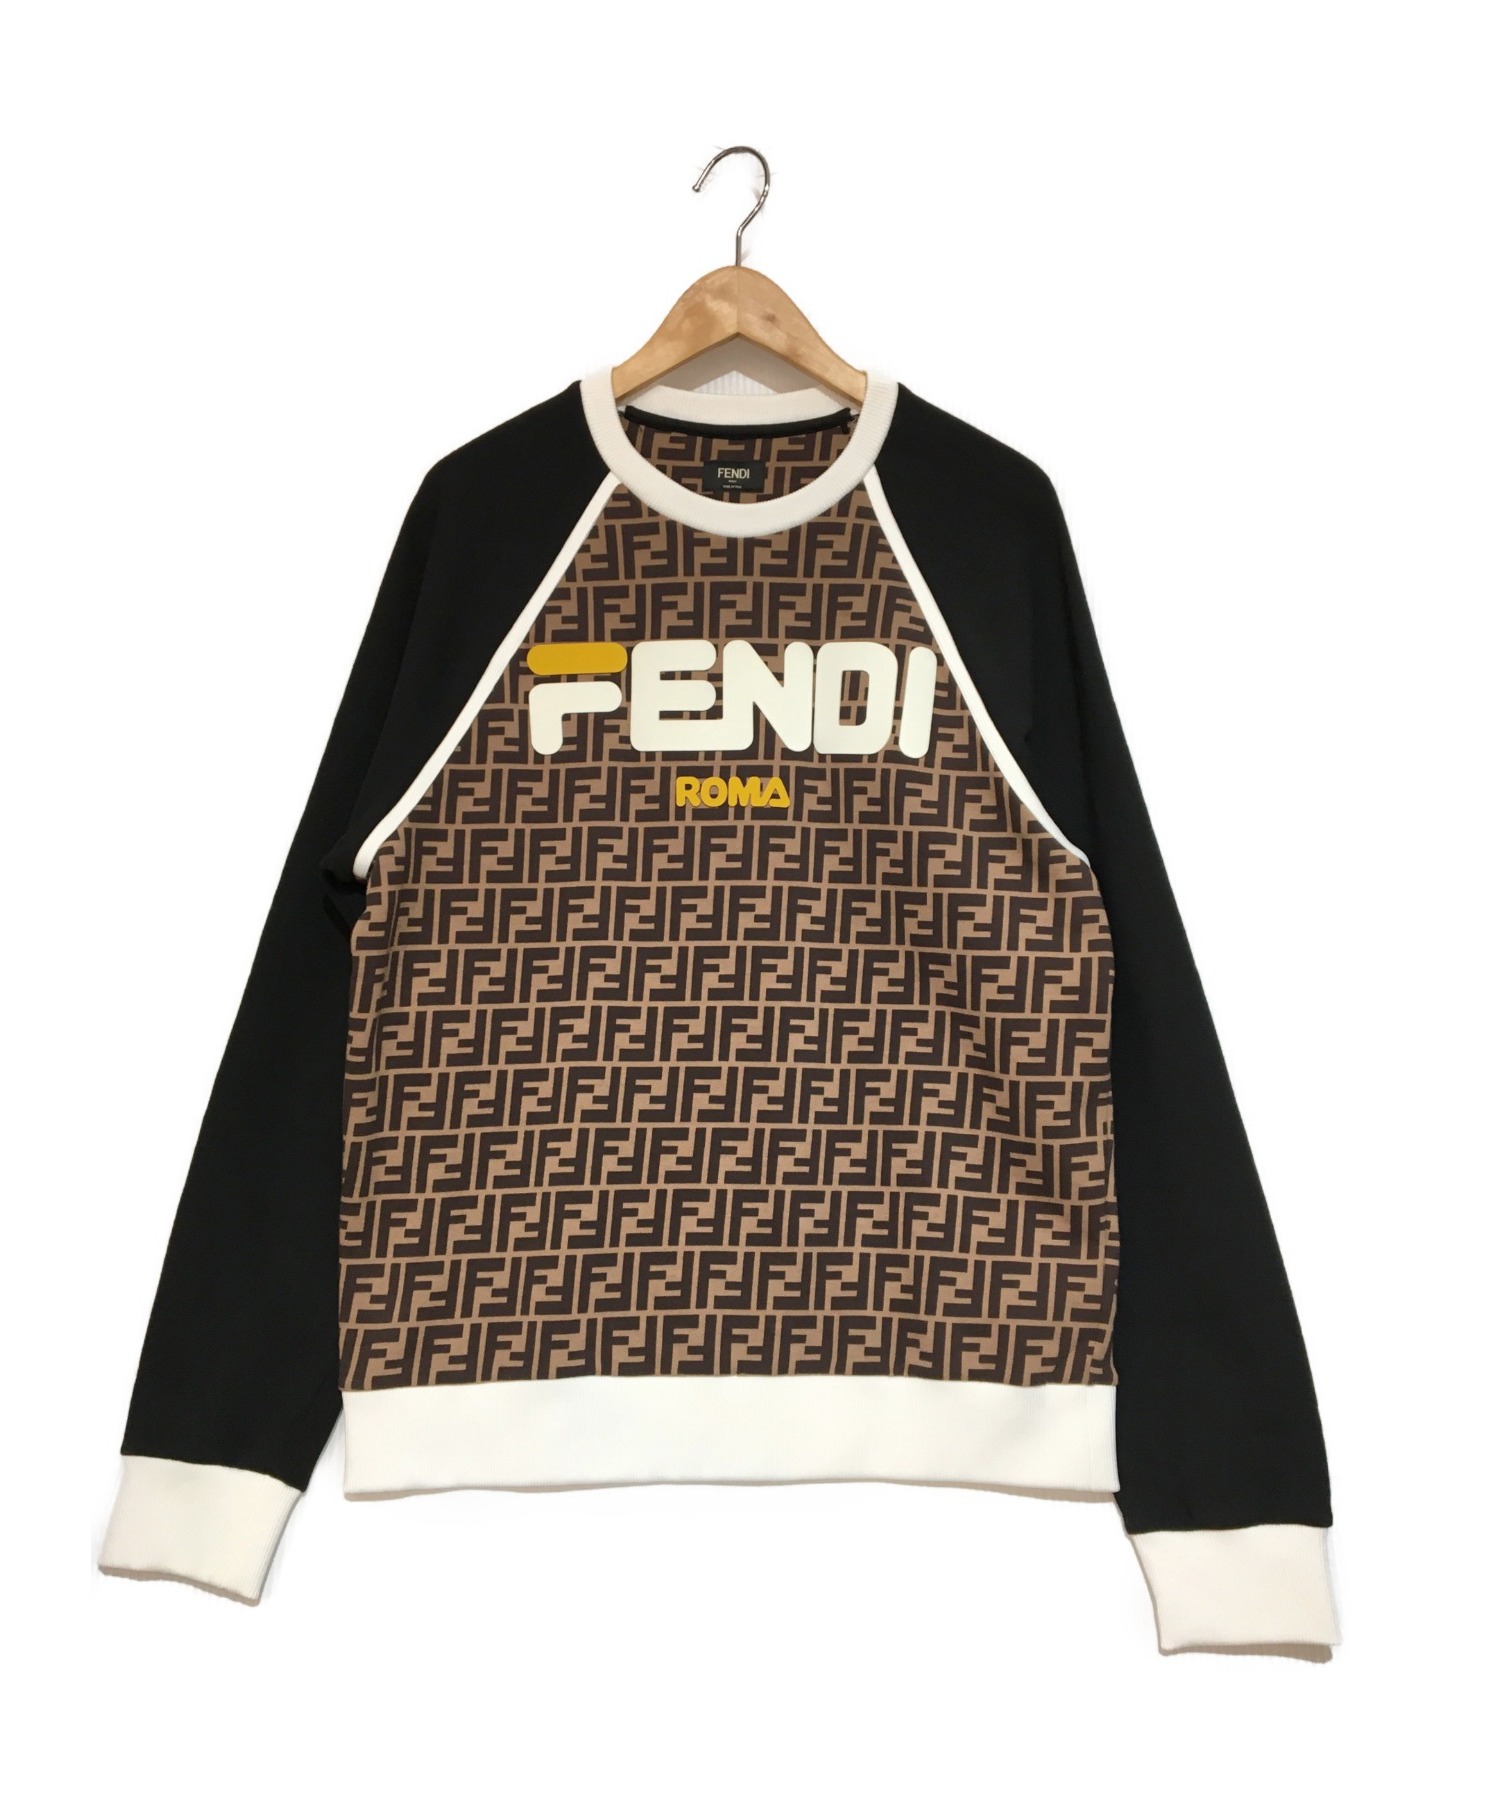 FENDI (フェンディ) FENDI MANIA FF LOGO SWEAT フェンディマニア ロゴ スウェット ブラウン サイズ:M